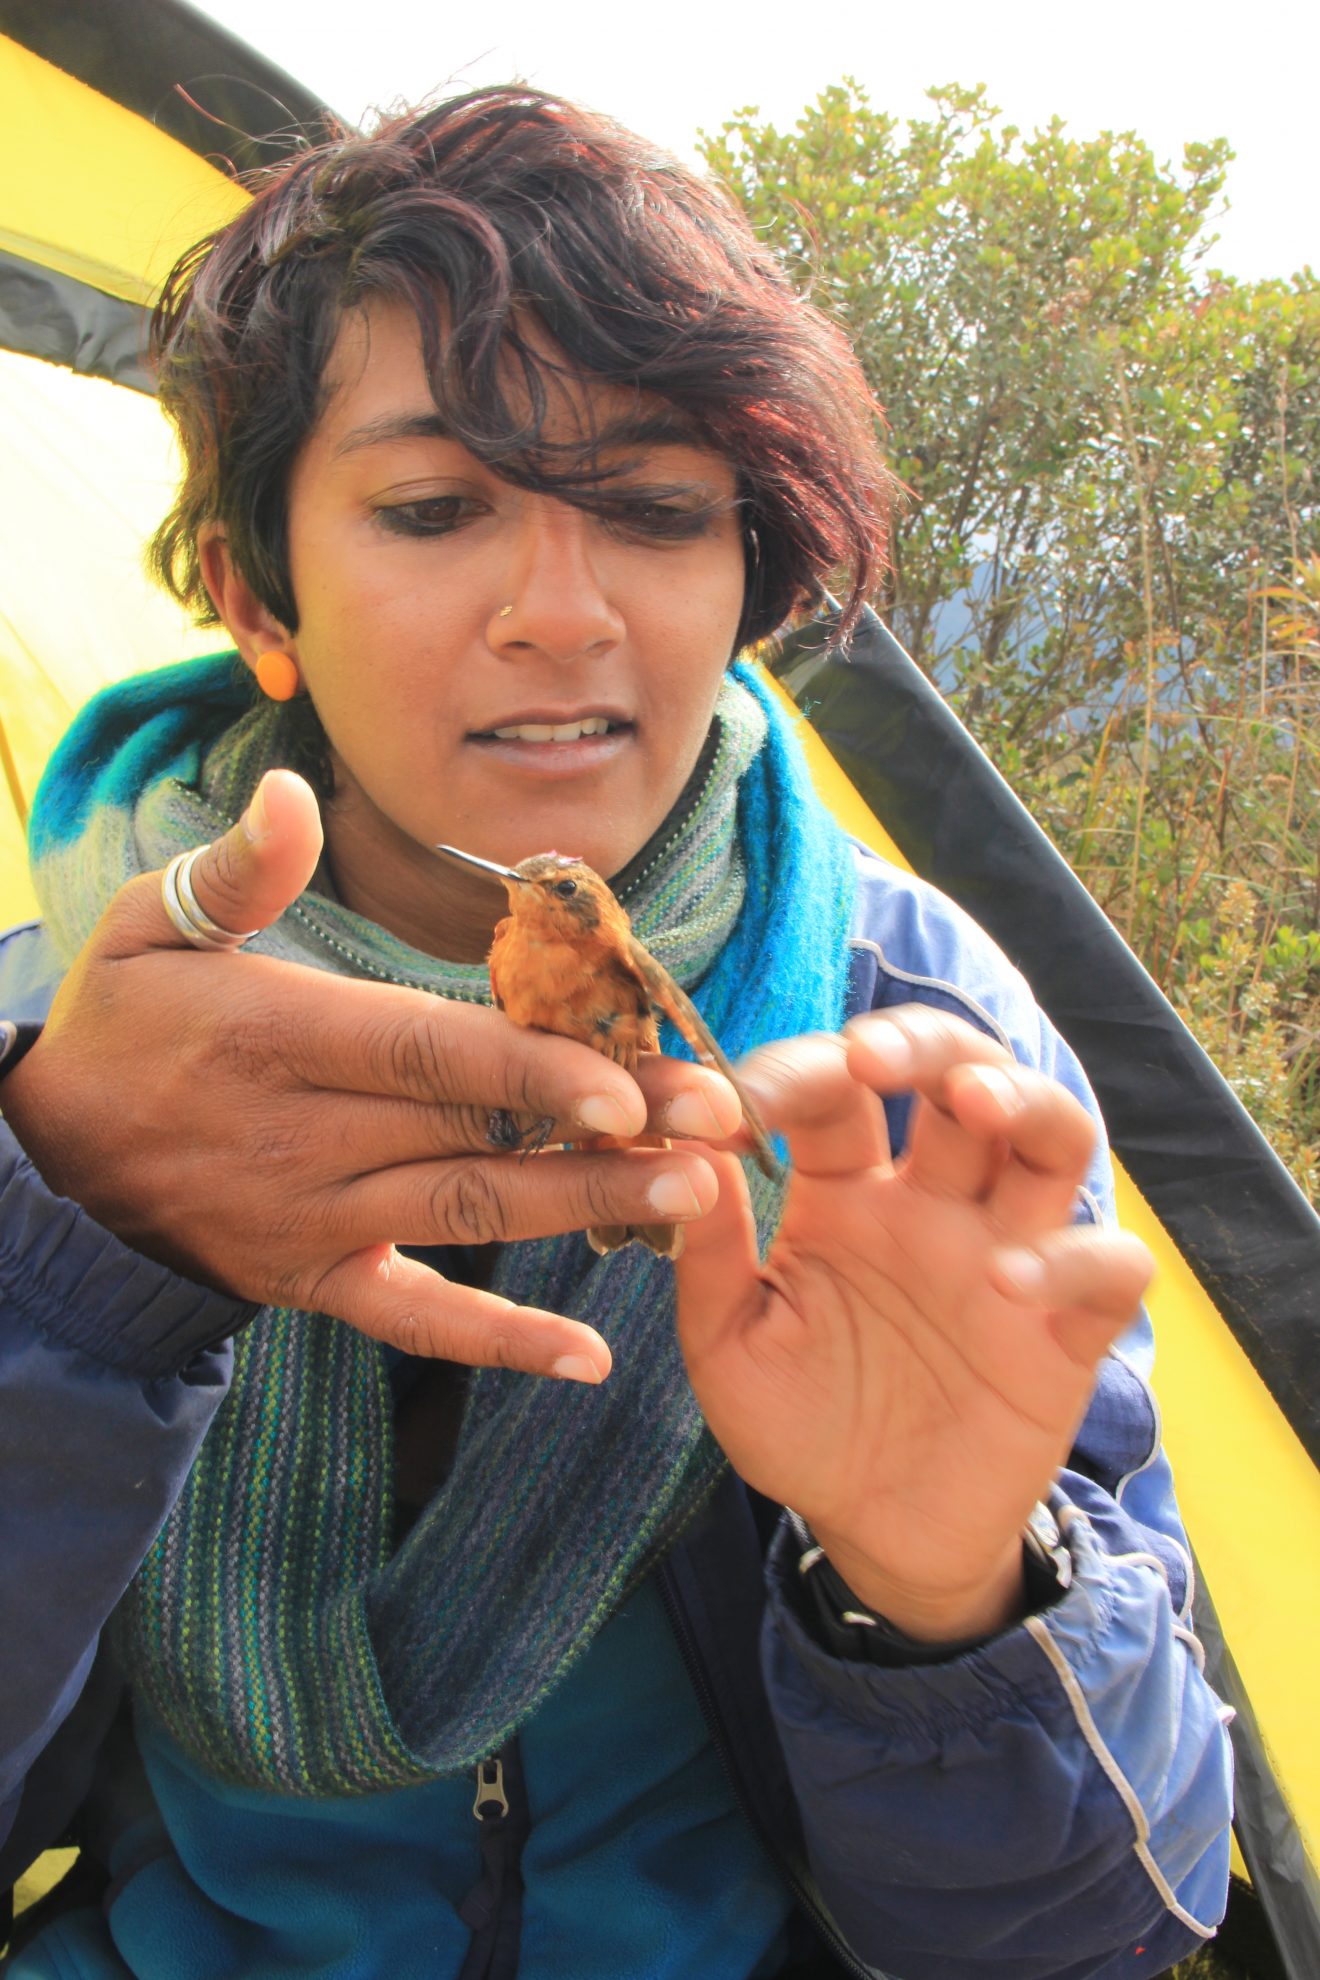 Anusha Shankar holding a small reddish bird.